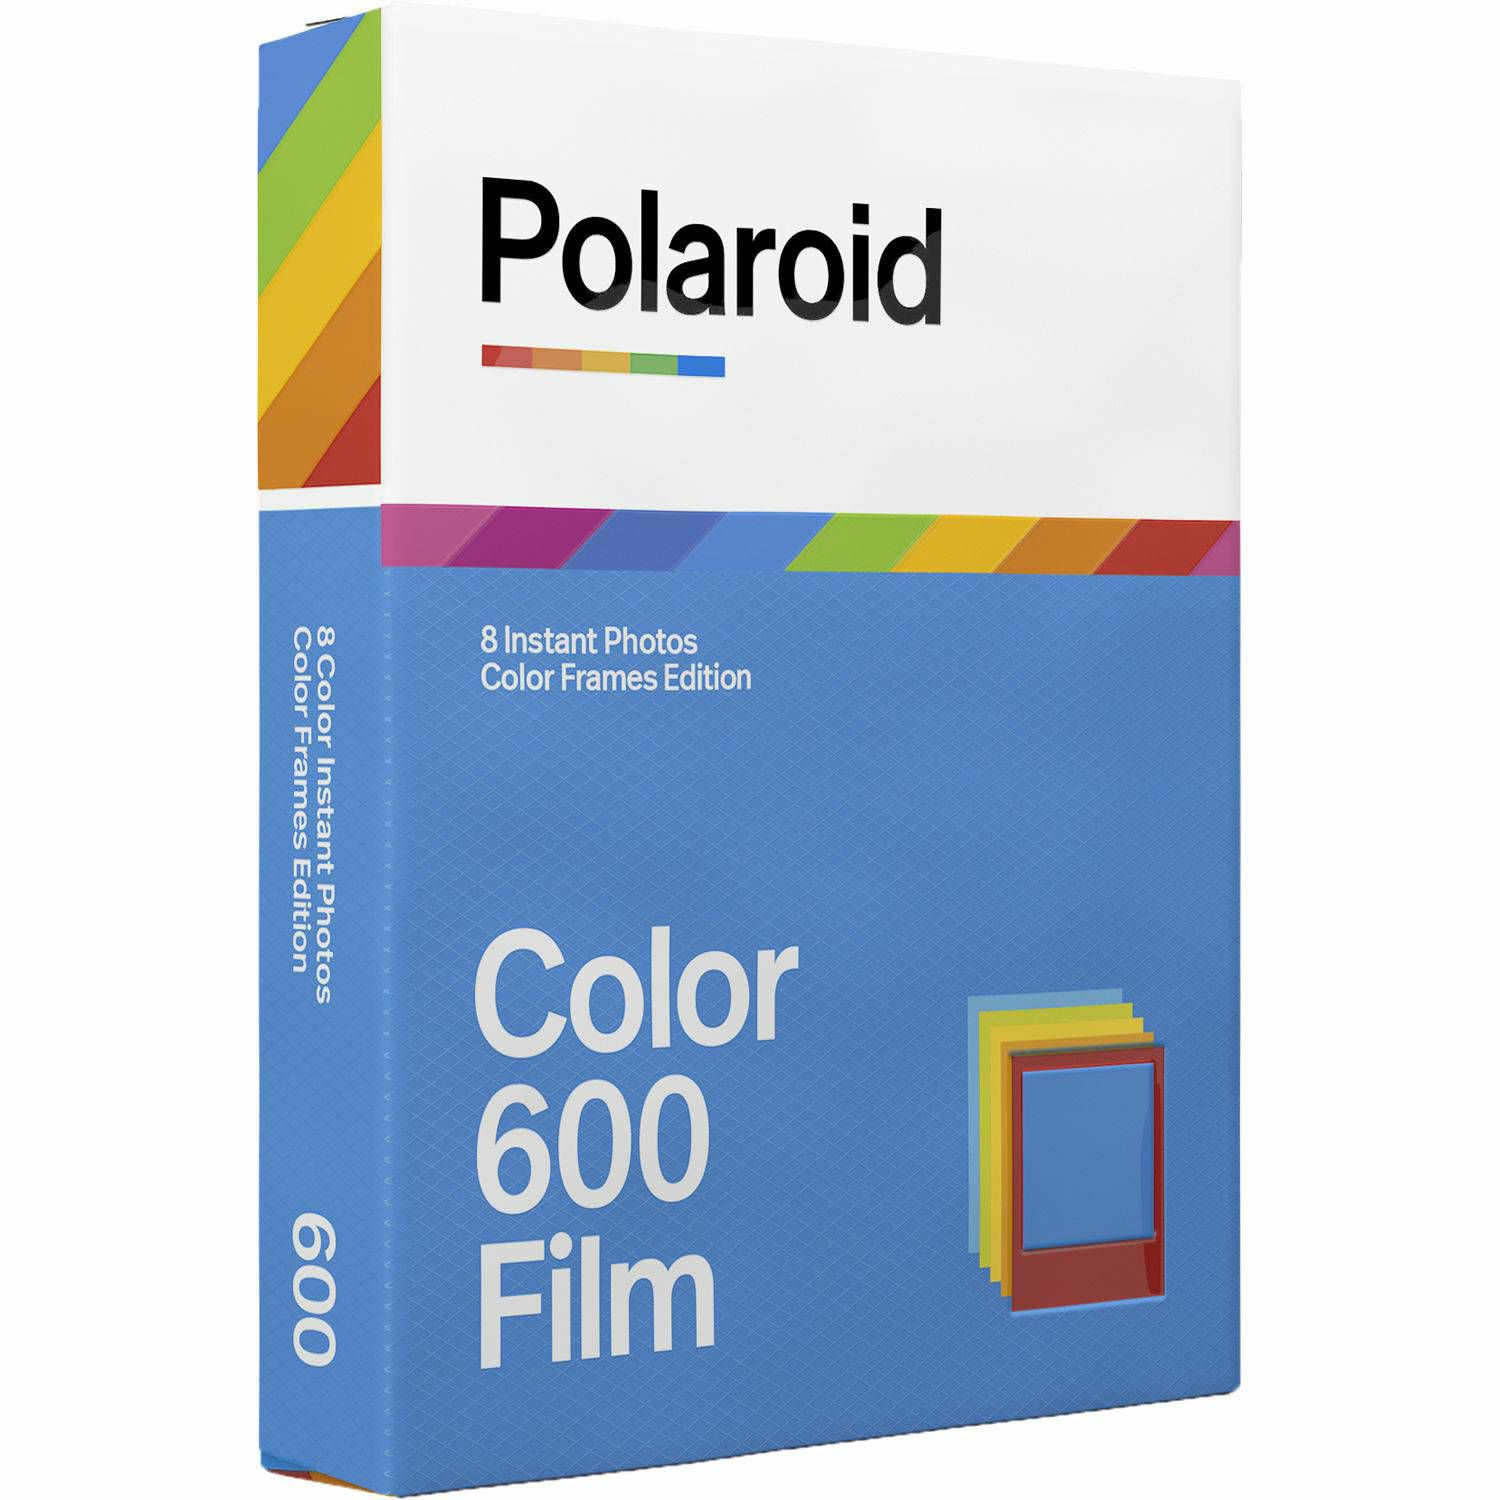 Polaroid Originals Color Film for 600 Color Frames papir za fotografije u boji za Instant fotoaparate (006015)